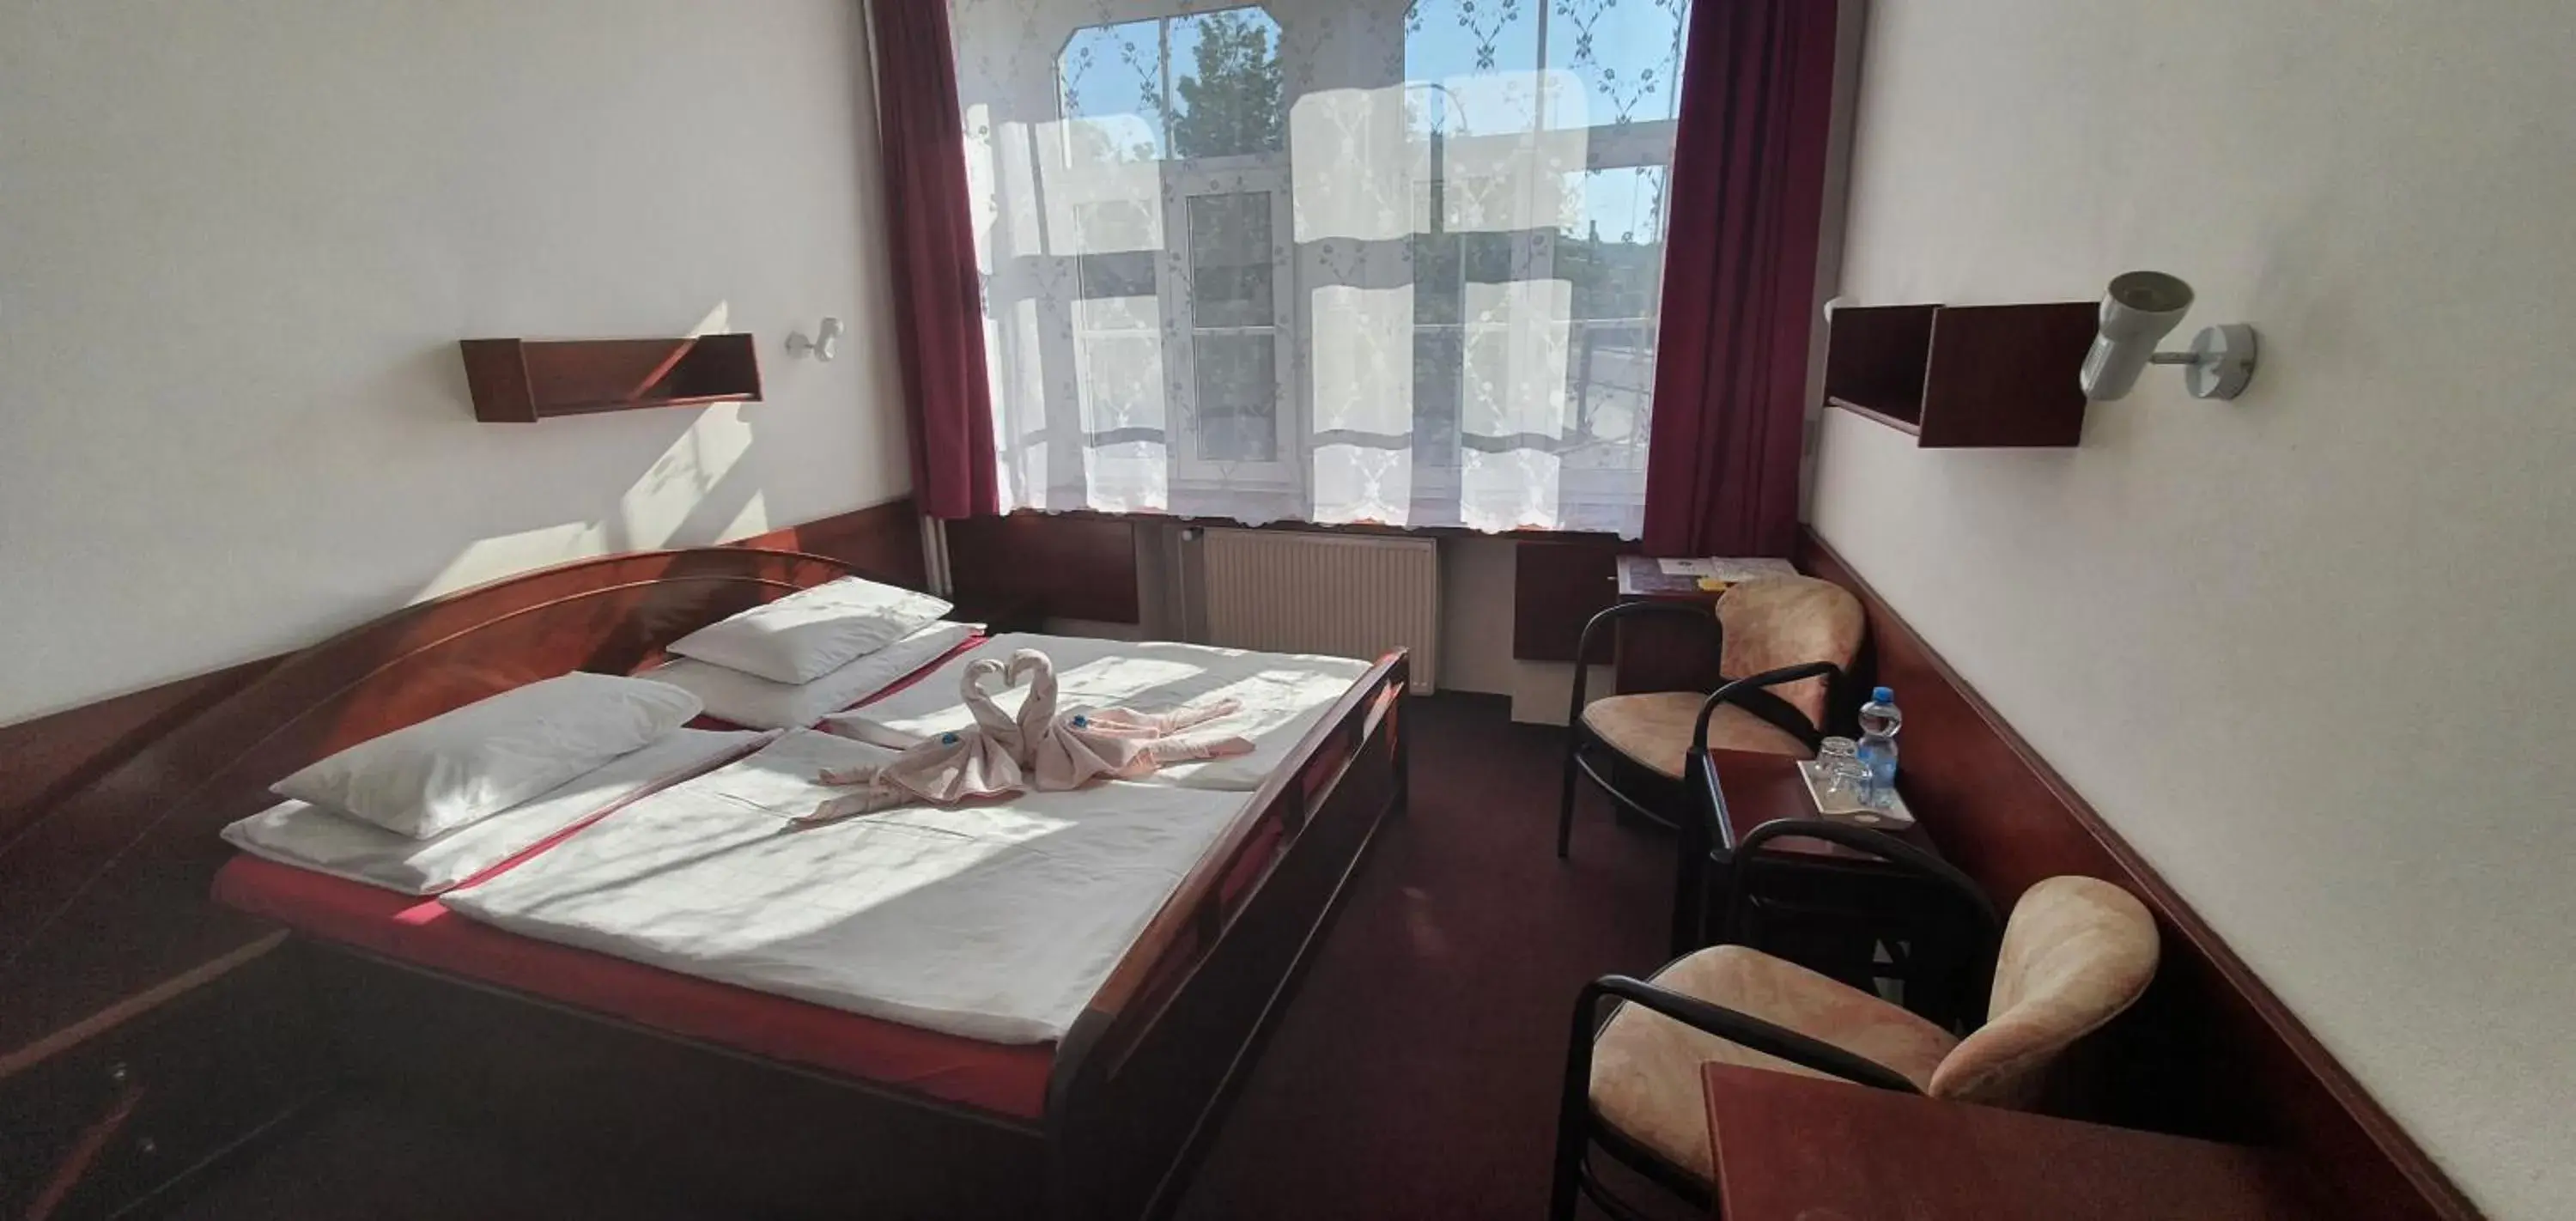 Bedroom in Hotel Jerabek